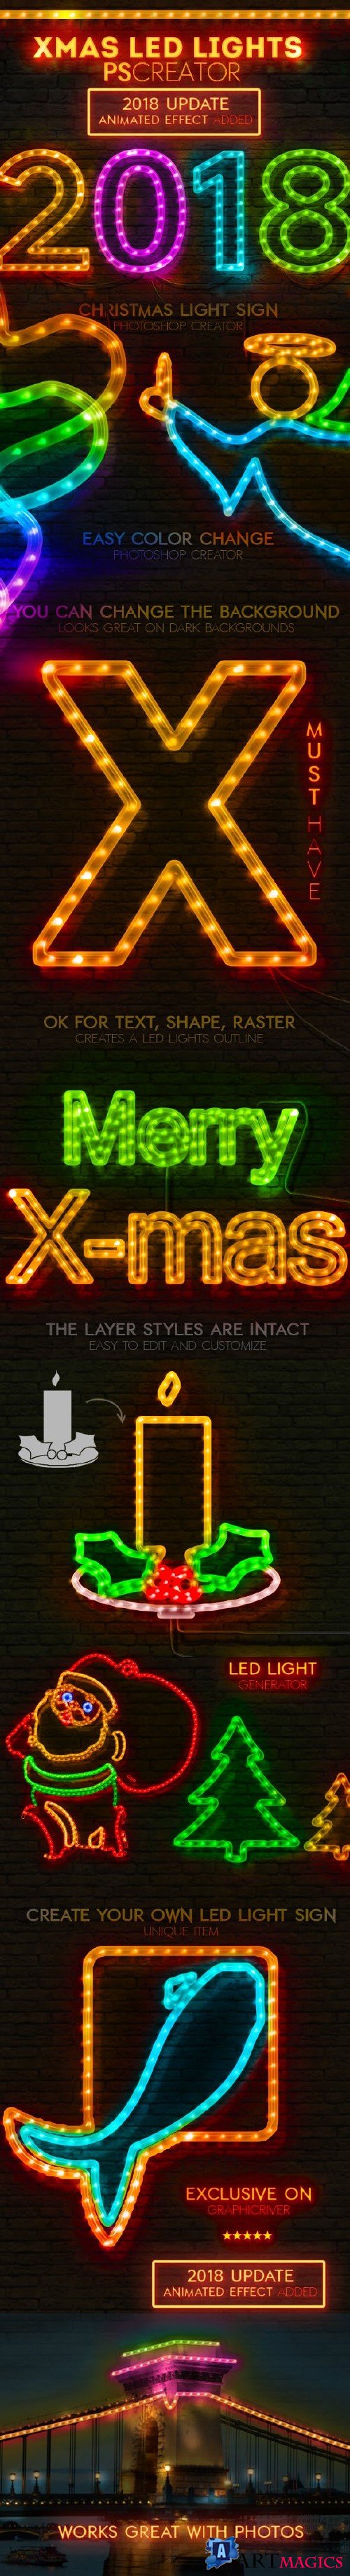 Christmas LED Light Rope Photoshop Action - 9475071